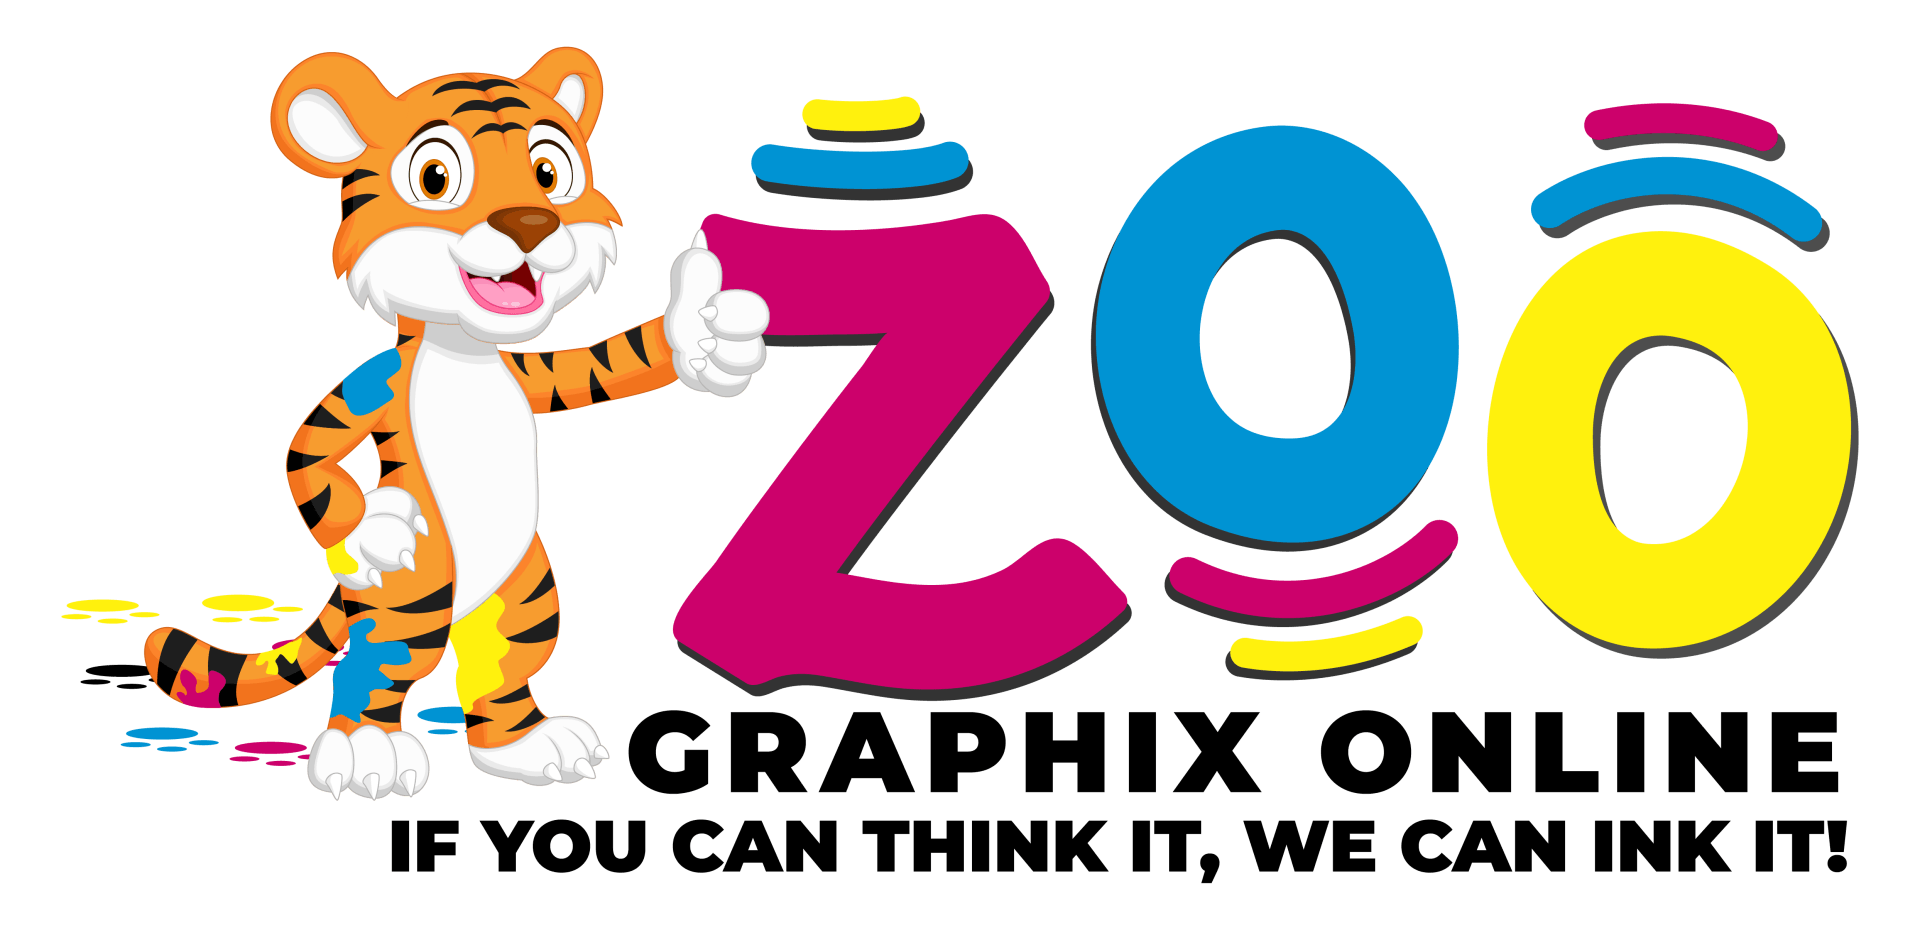 Zoo Graphix Online